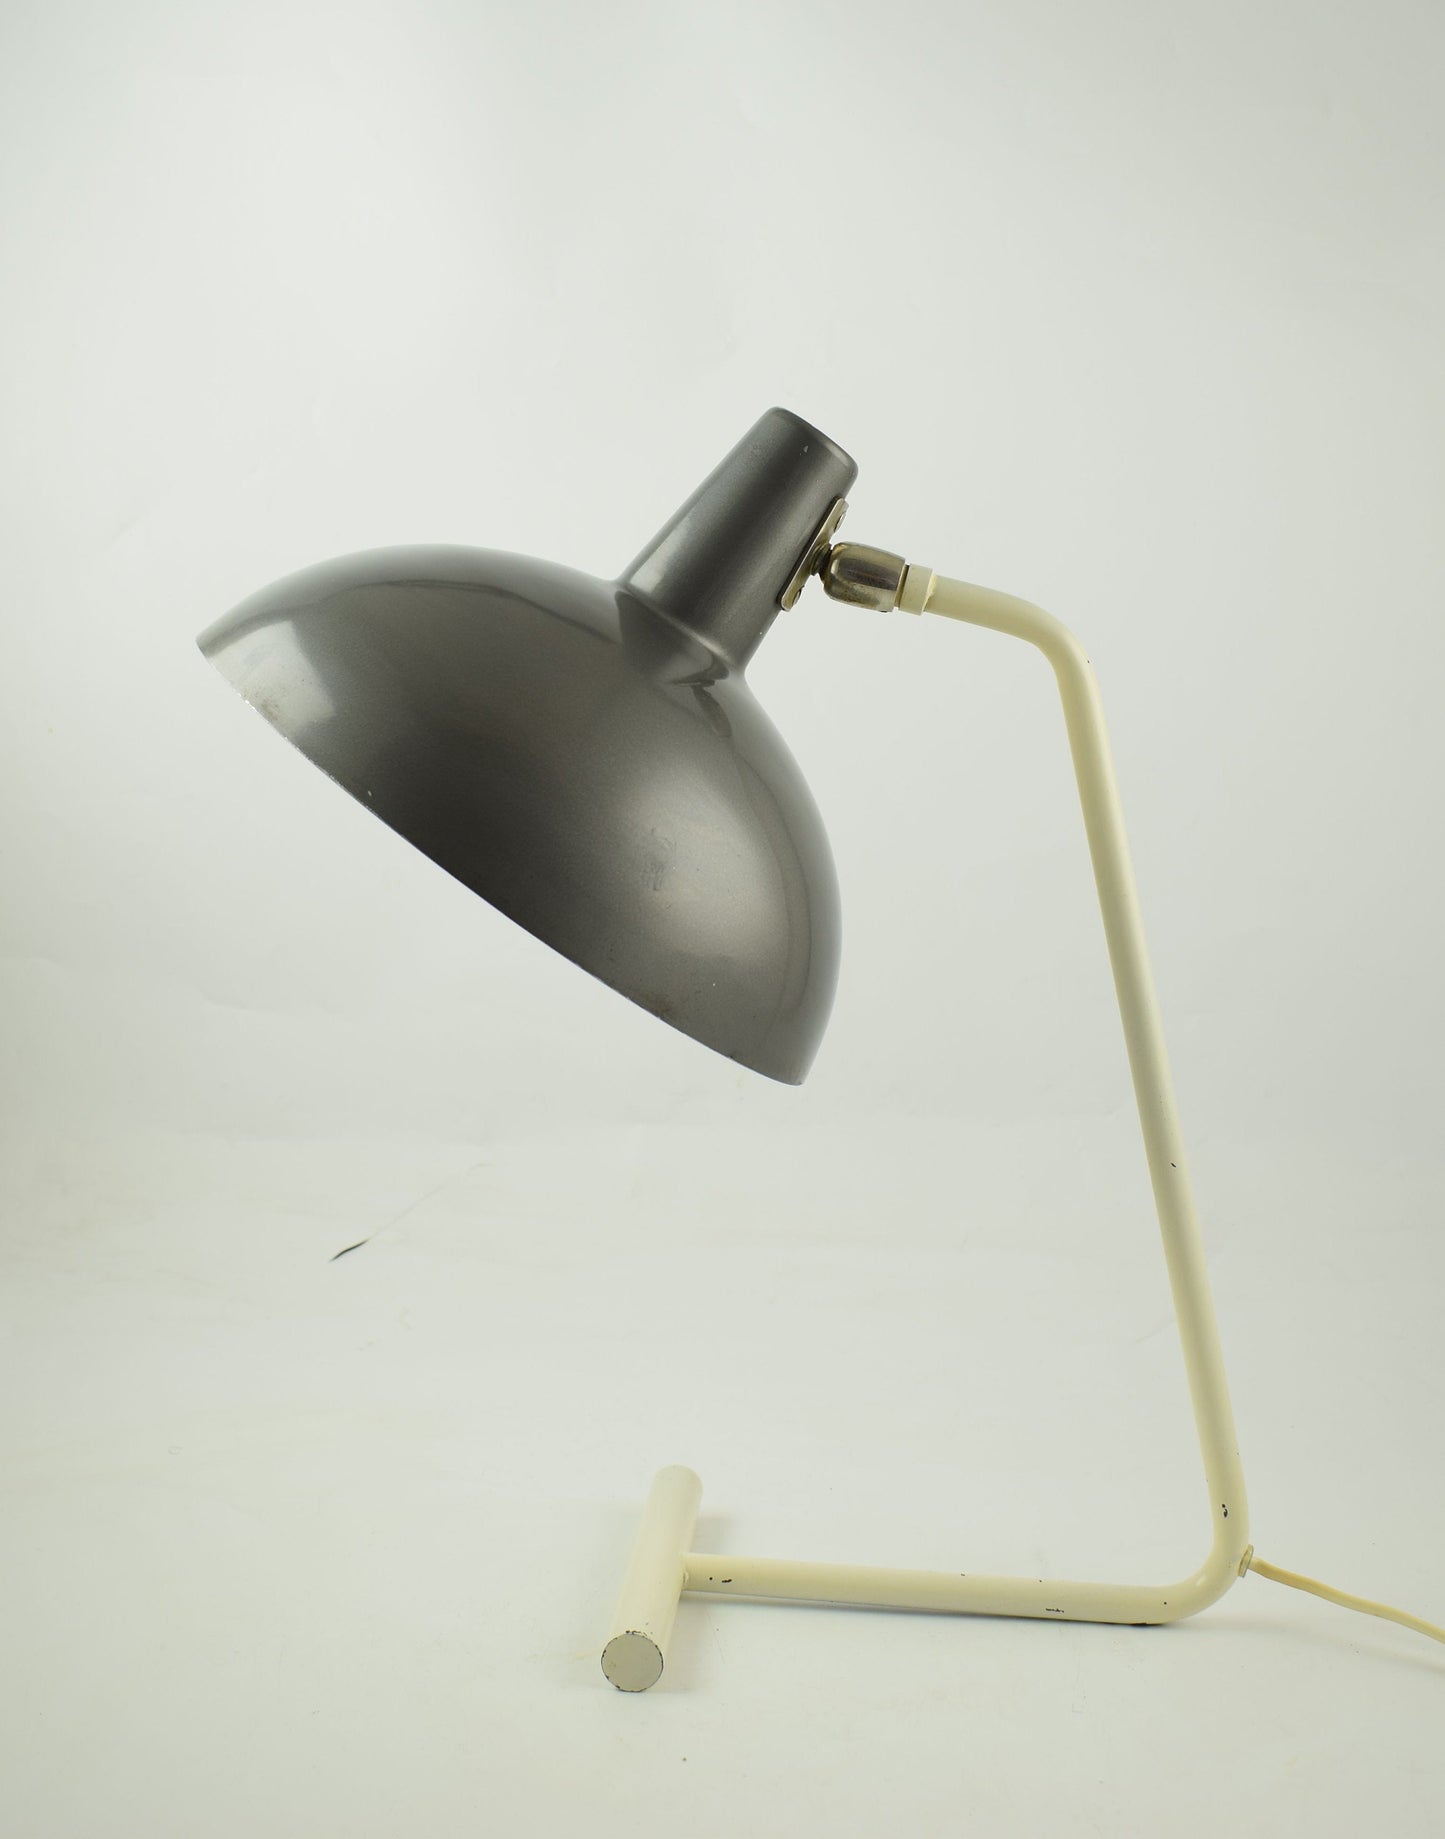 Anvia Almelo desk lamp or table lamp by J. Hoogervorst Dutch desk light